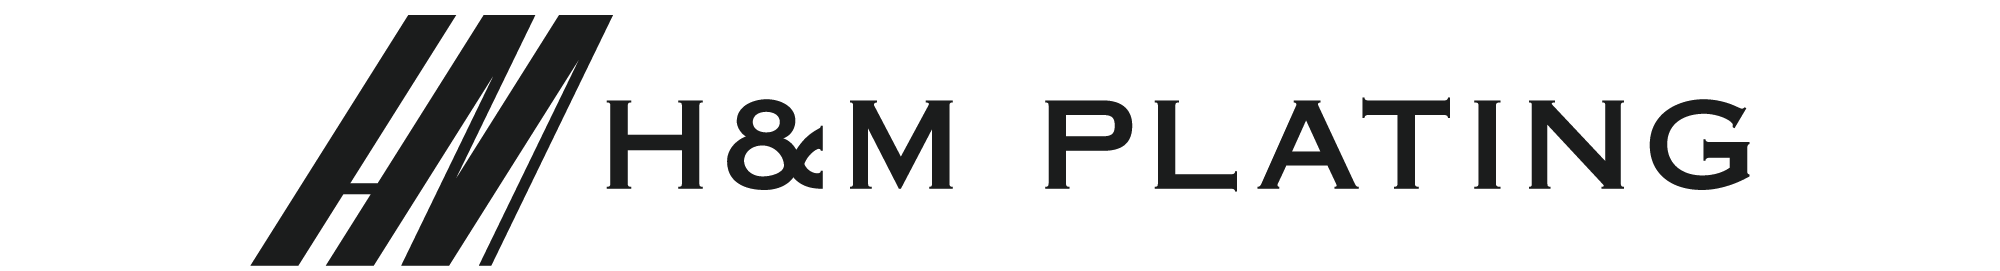 H&M Plating logo